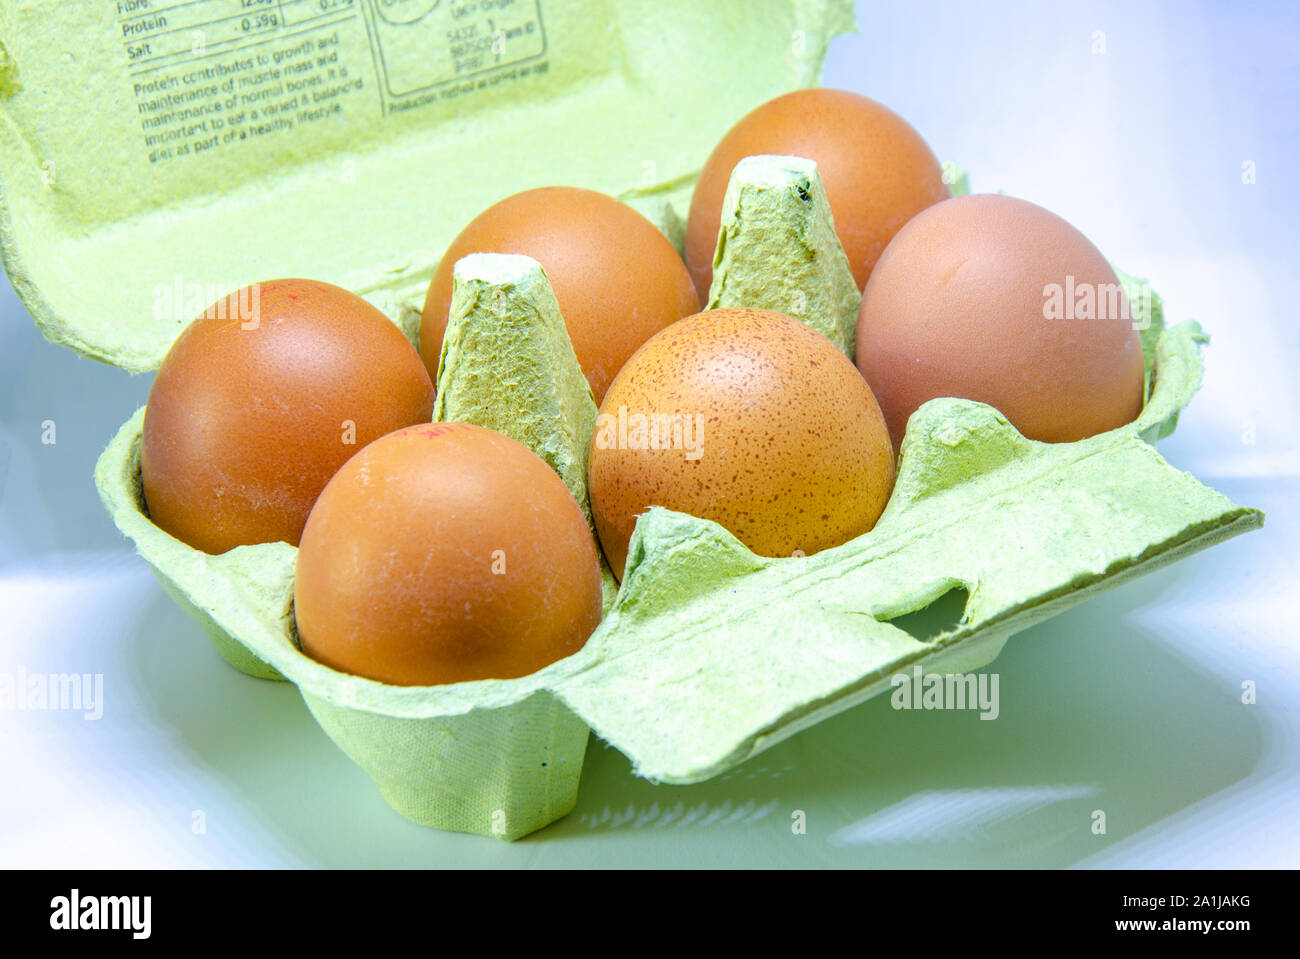 Half a dozen eggs in a paper egg box. Stock Photo